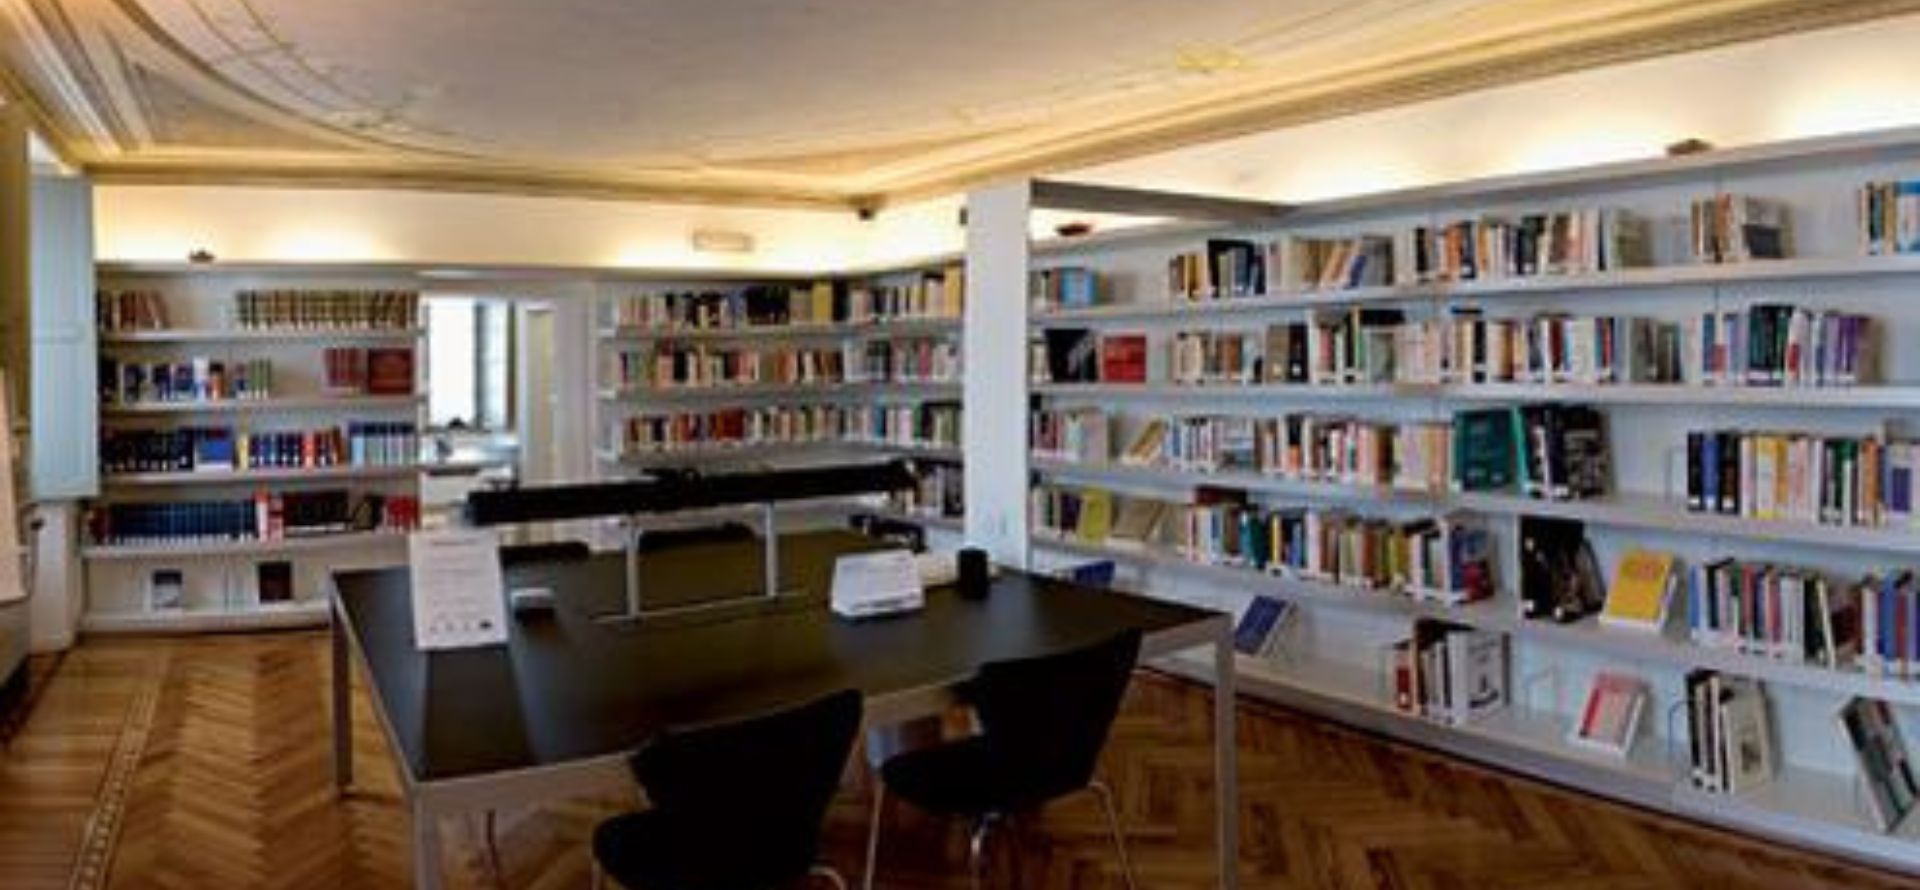 Biblioteca "Luigi Credaro"